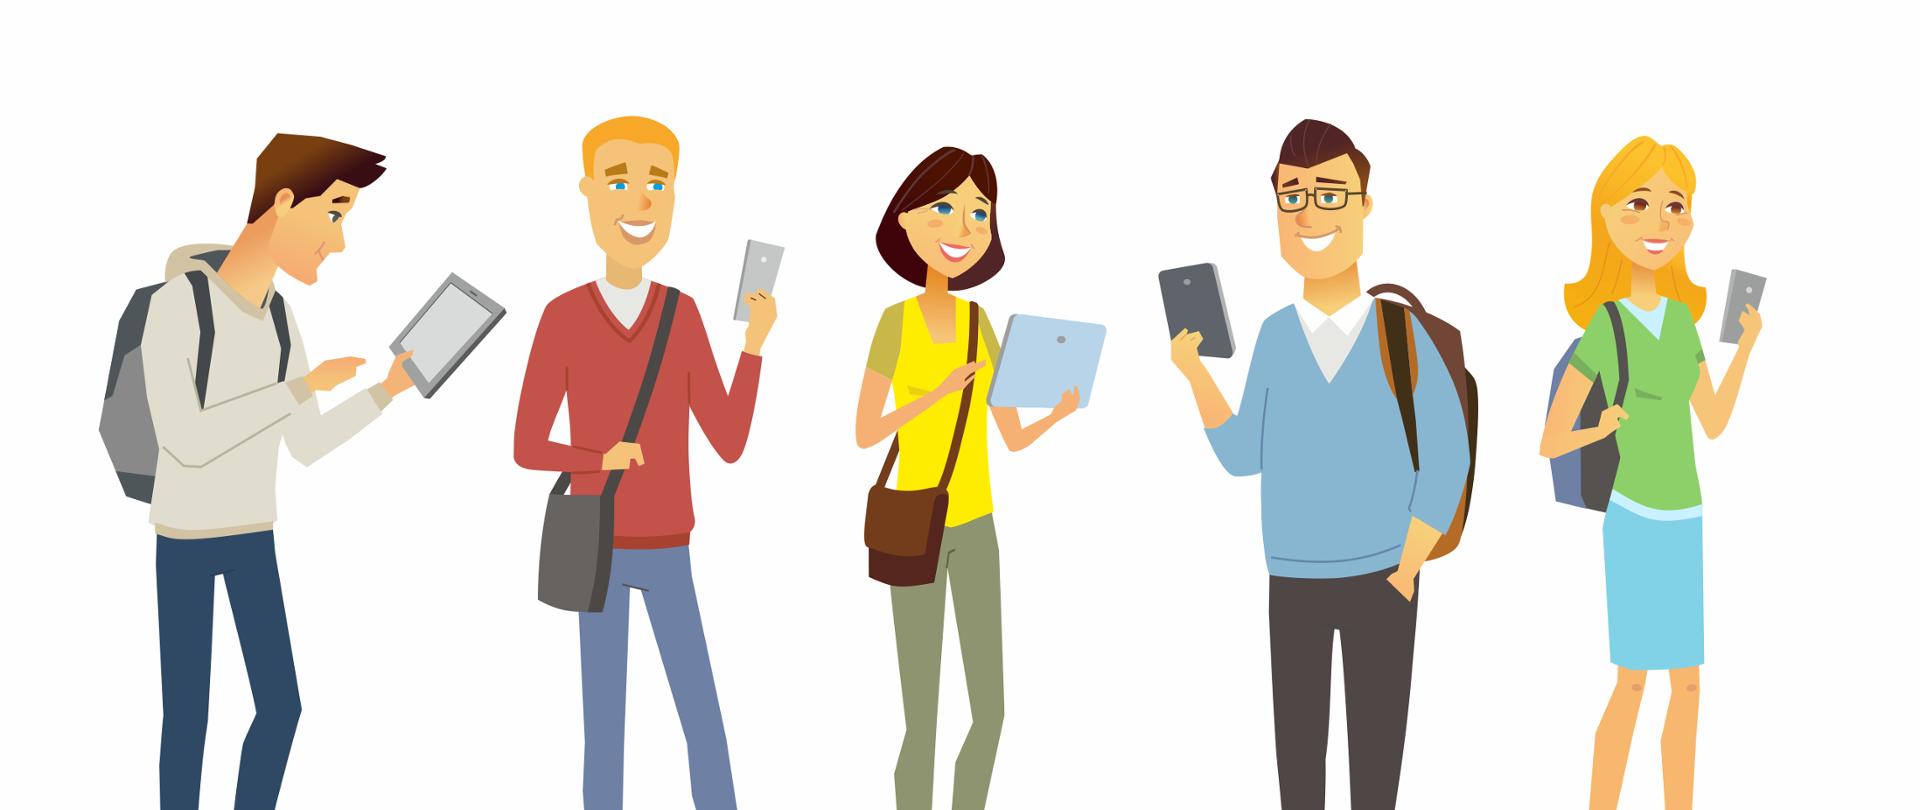 Grafika wektorowa - pięć osób (trzech mężczyzn i dwie kobiety). Każda z nich trzyma w dłoni tablet lub smartfon.